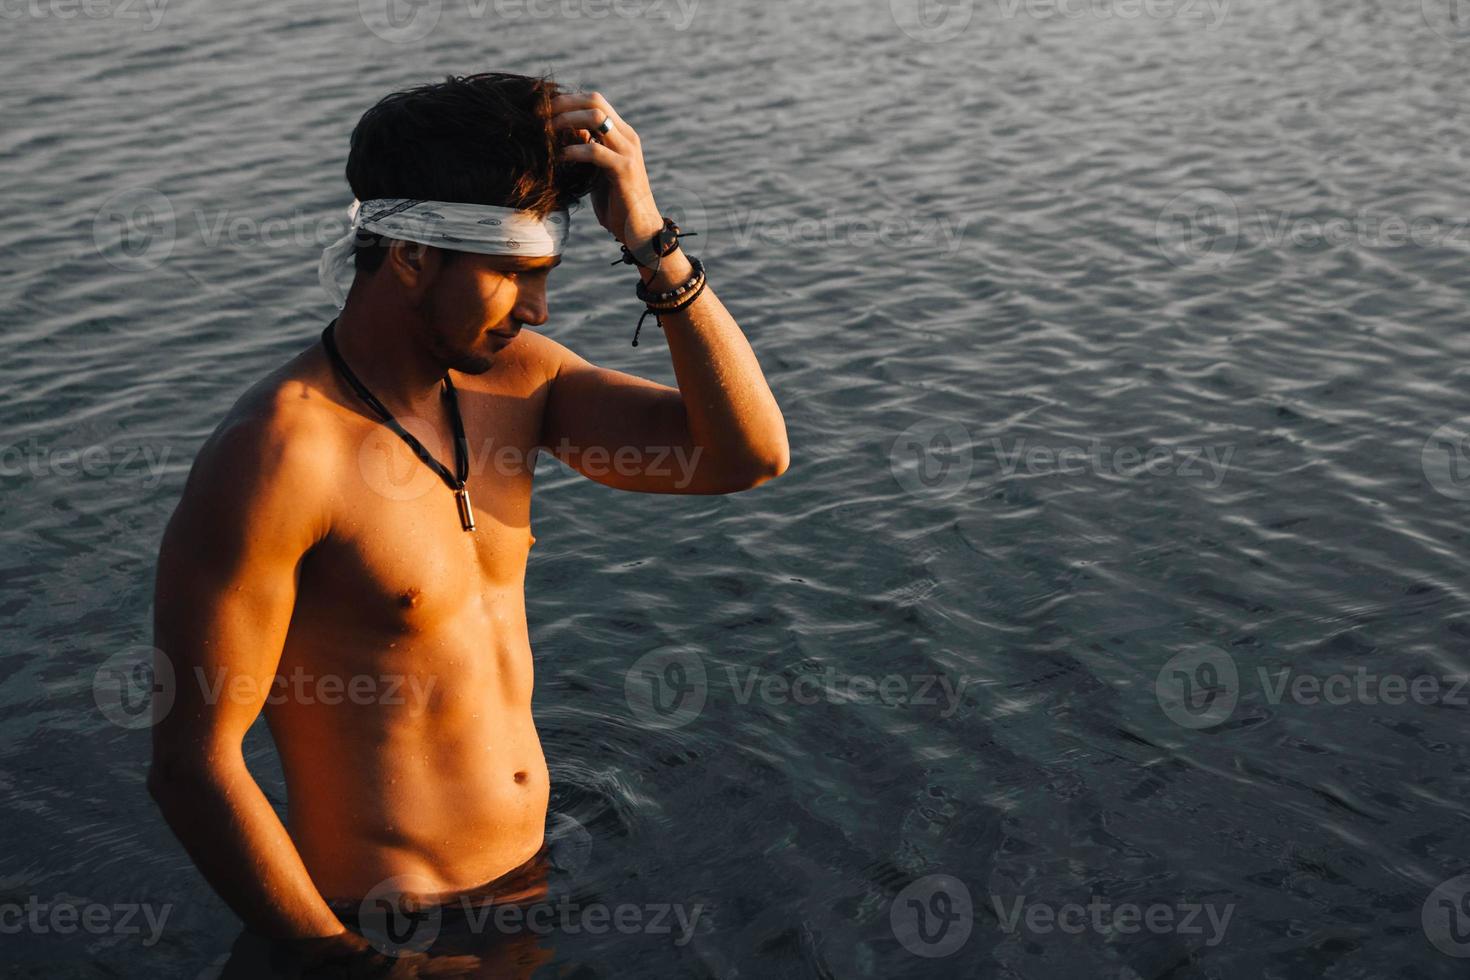 homem com arquibancadas musculares perfeitas na água ao pôr do sol foto